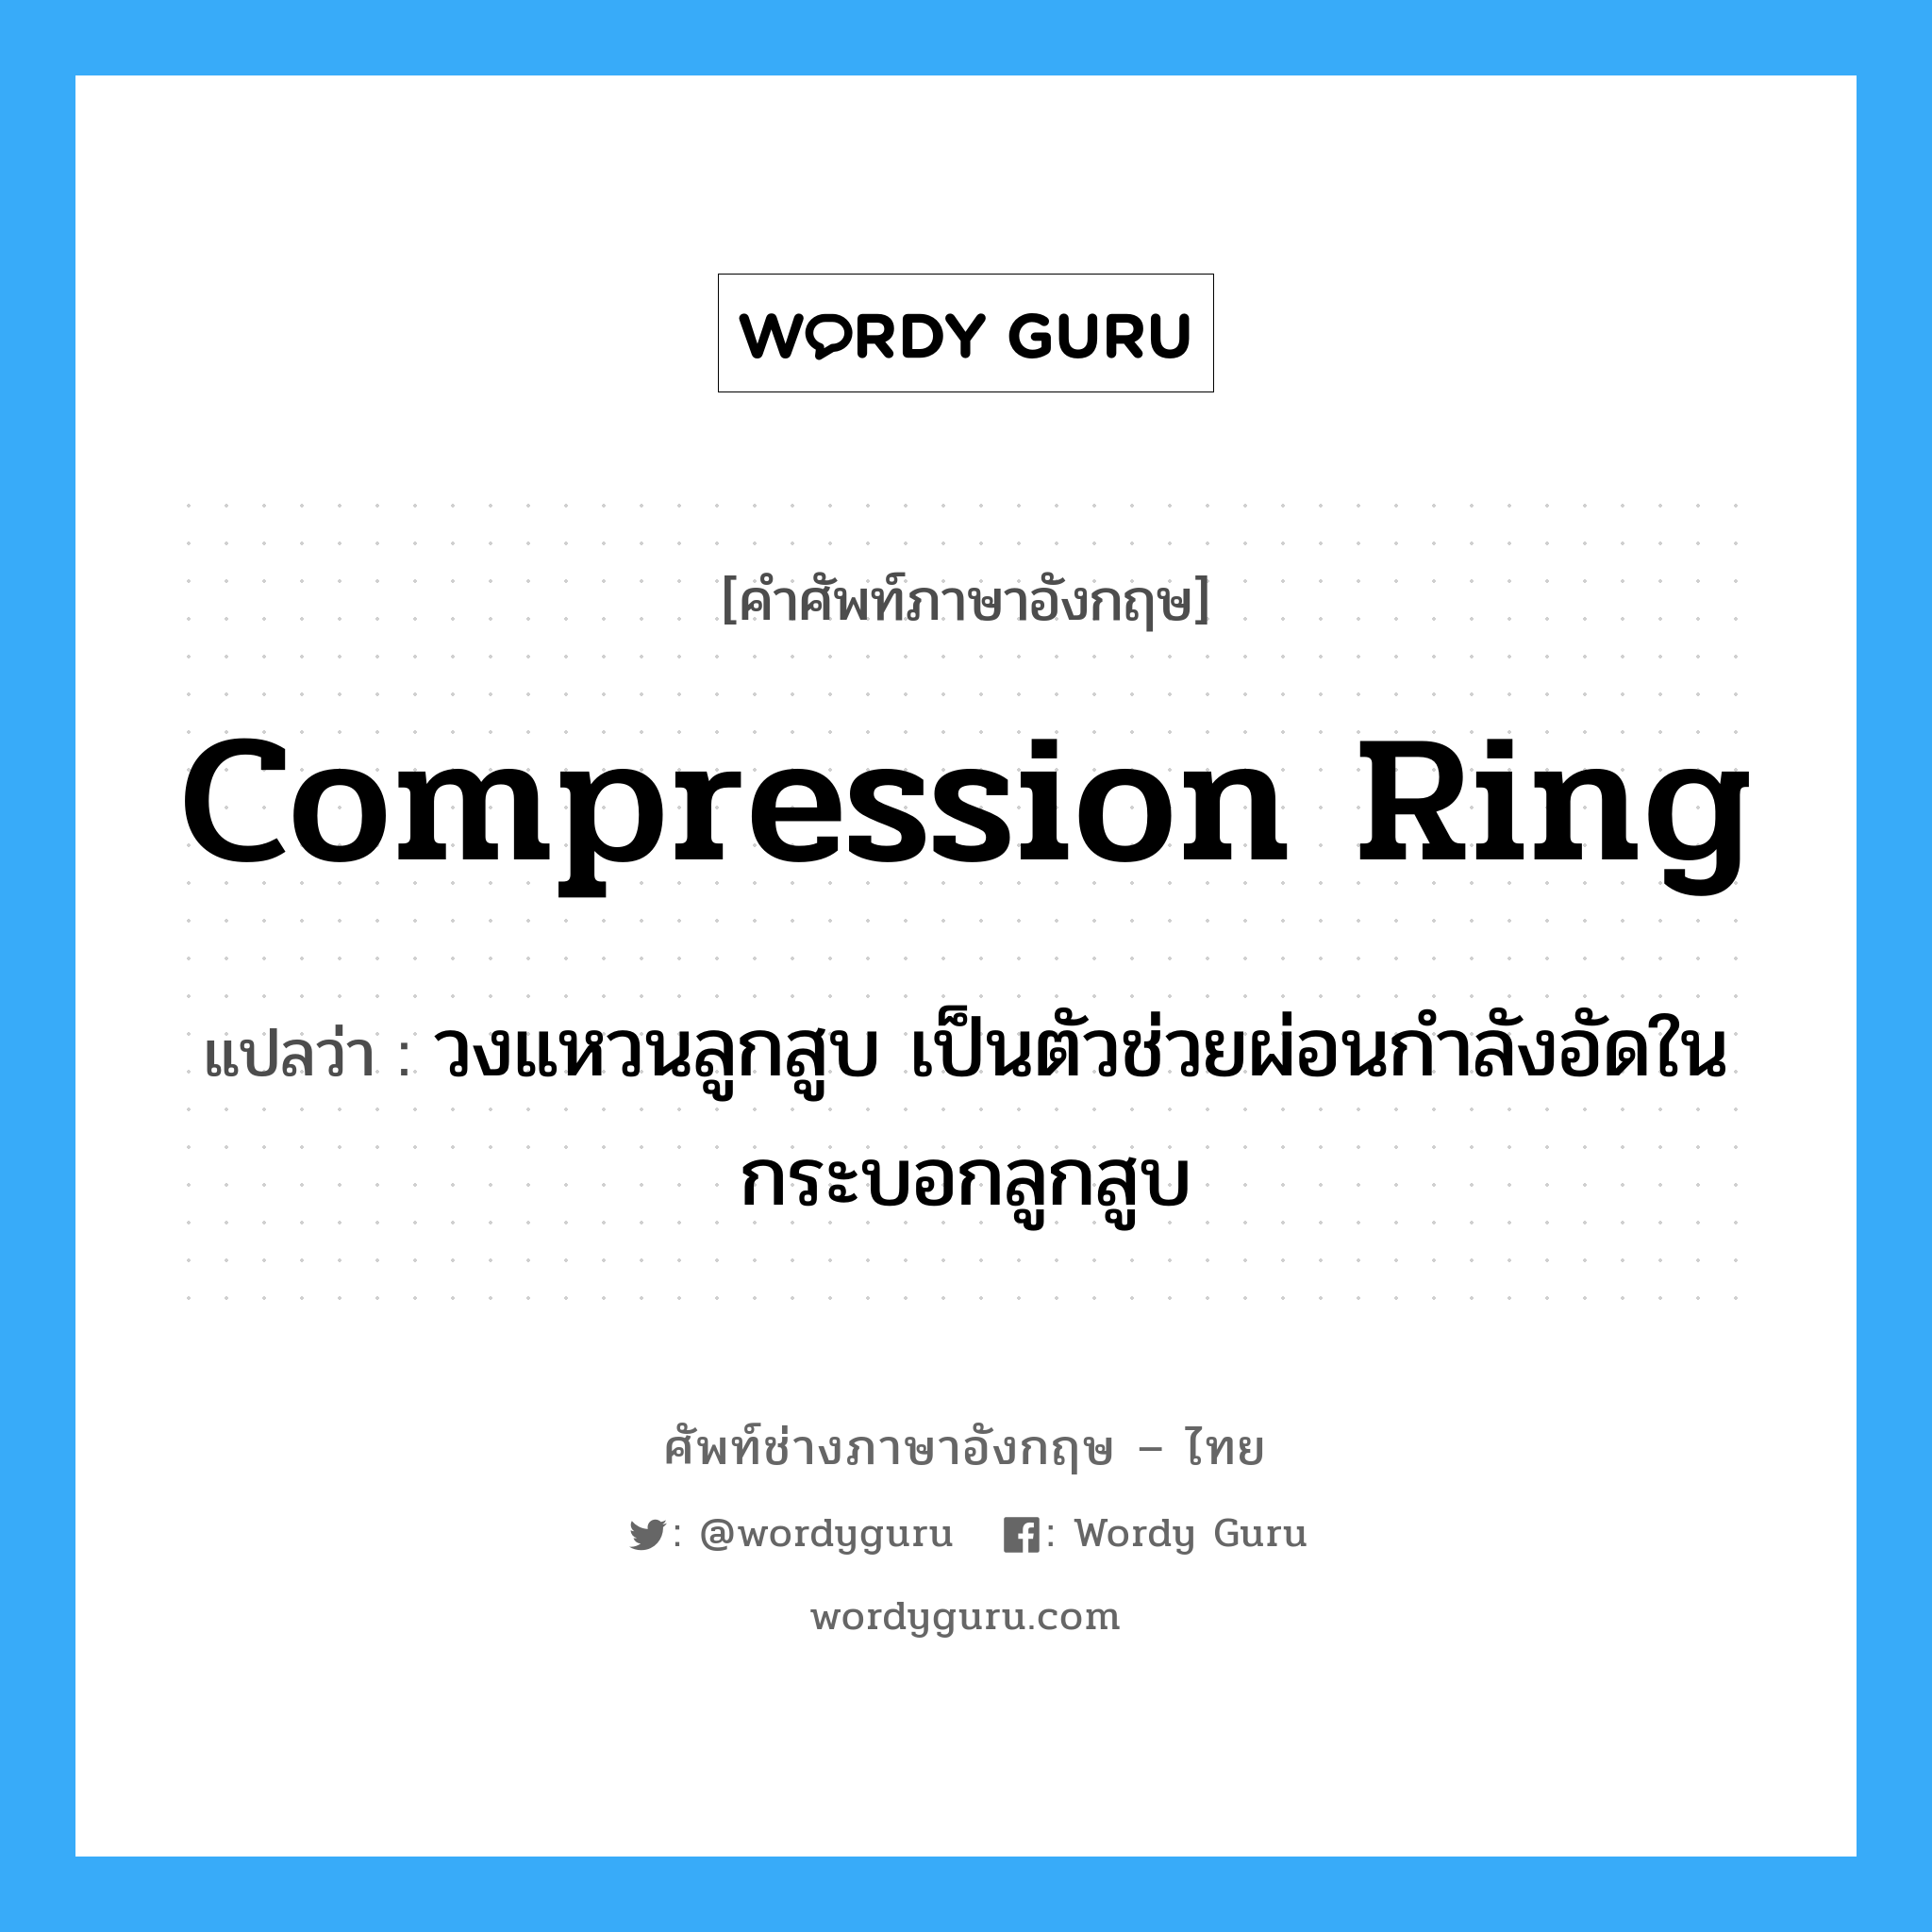 compression ring แปลว่า?, คำศัพท์ช่างภาษาอังกฤษ - ไทย compression ring คำศัพท์ภาษาอังกฤษ compression ring แปลว่า วงแหวนลูกสูบ เป็นตัวช่วยผ่อนกำลังอัดในกระบอกลูกสูบ